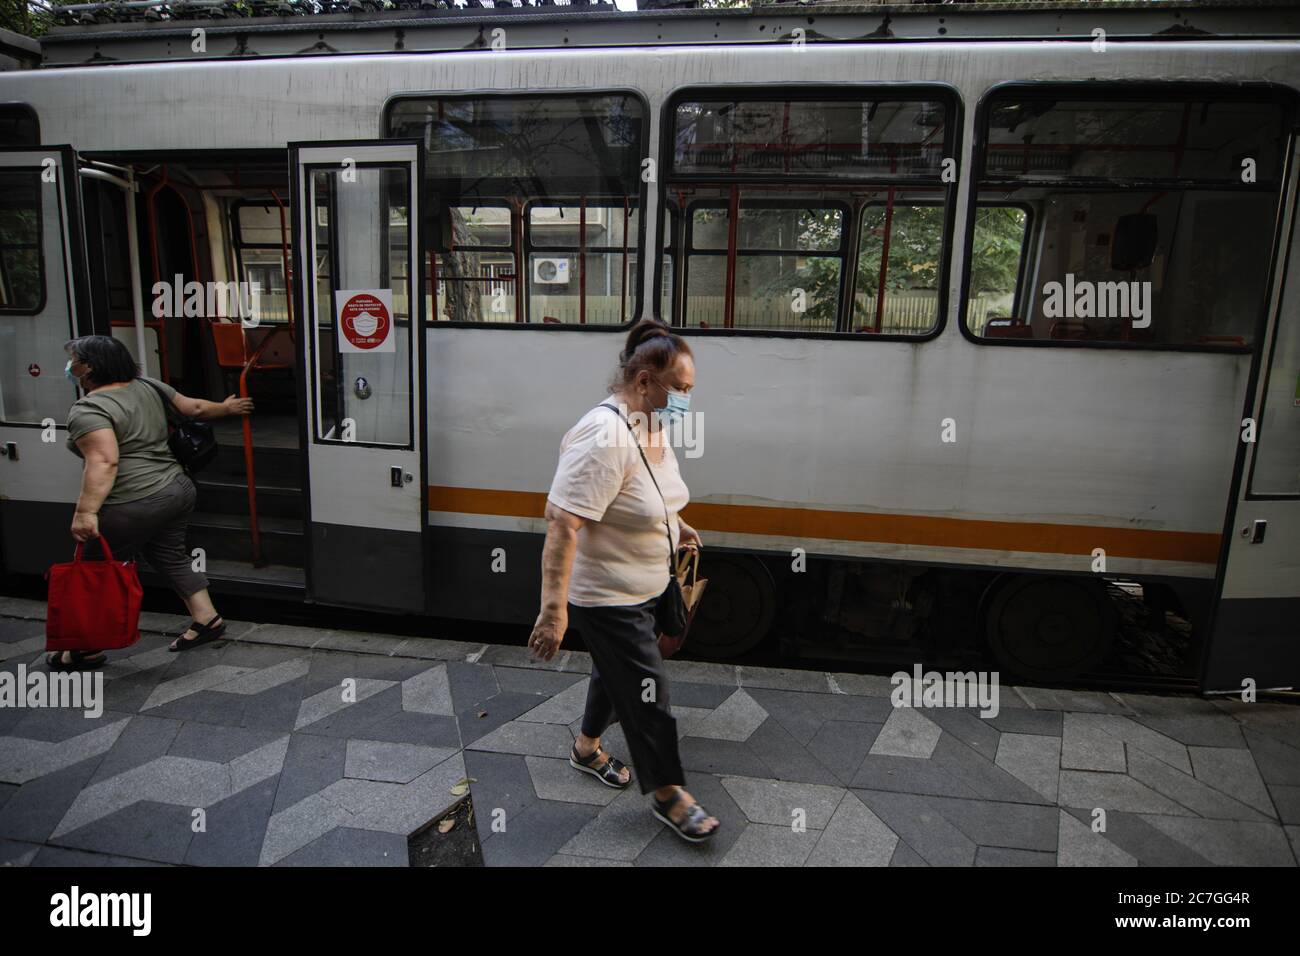 Bukarest / Rumänien - 14. Juli 2020: Straßenbahn in Bukarest mit Menschen in Masken während des Covid-19-Ausbruchs. Stockfoto